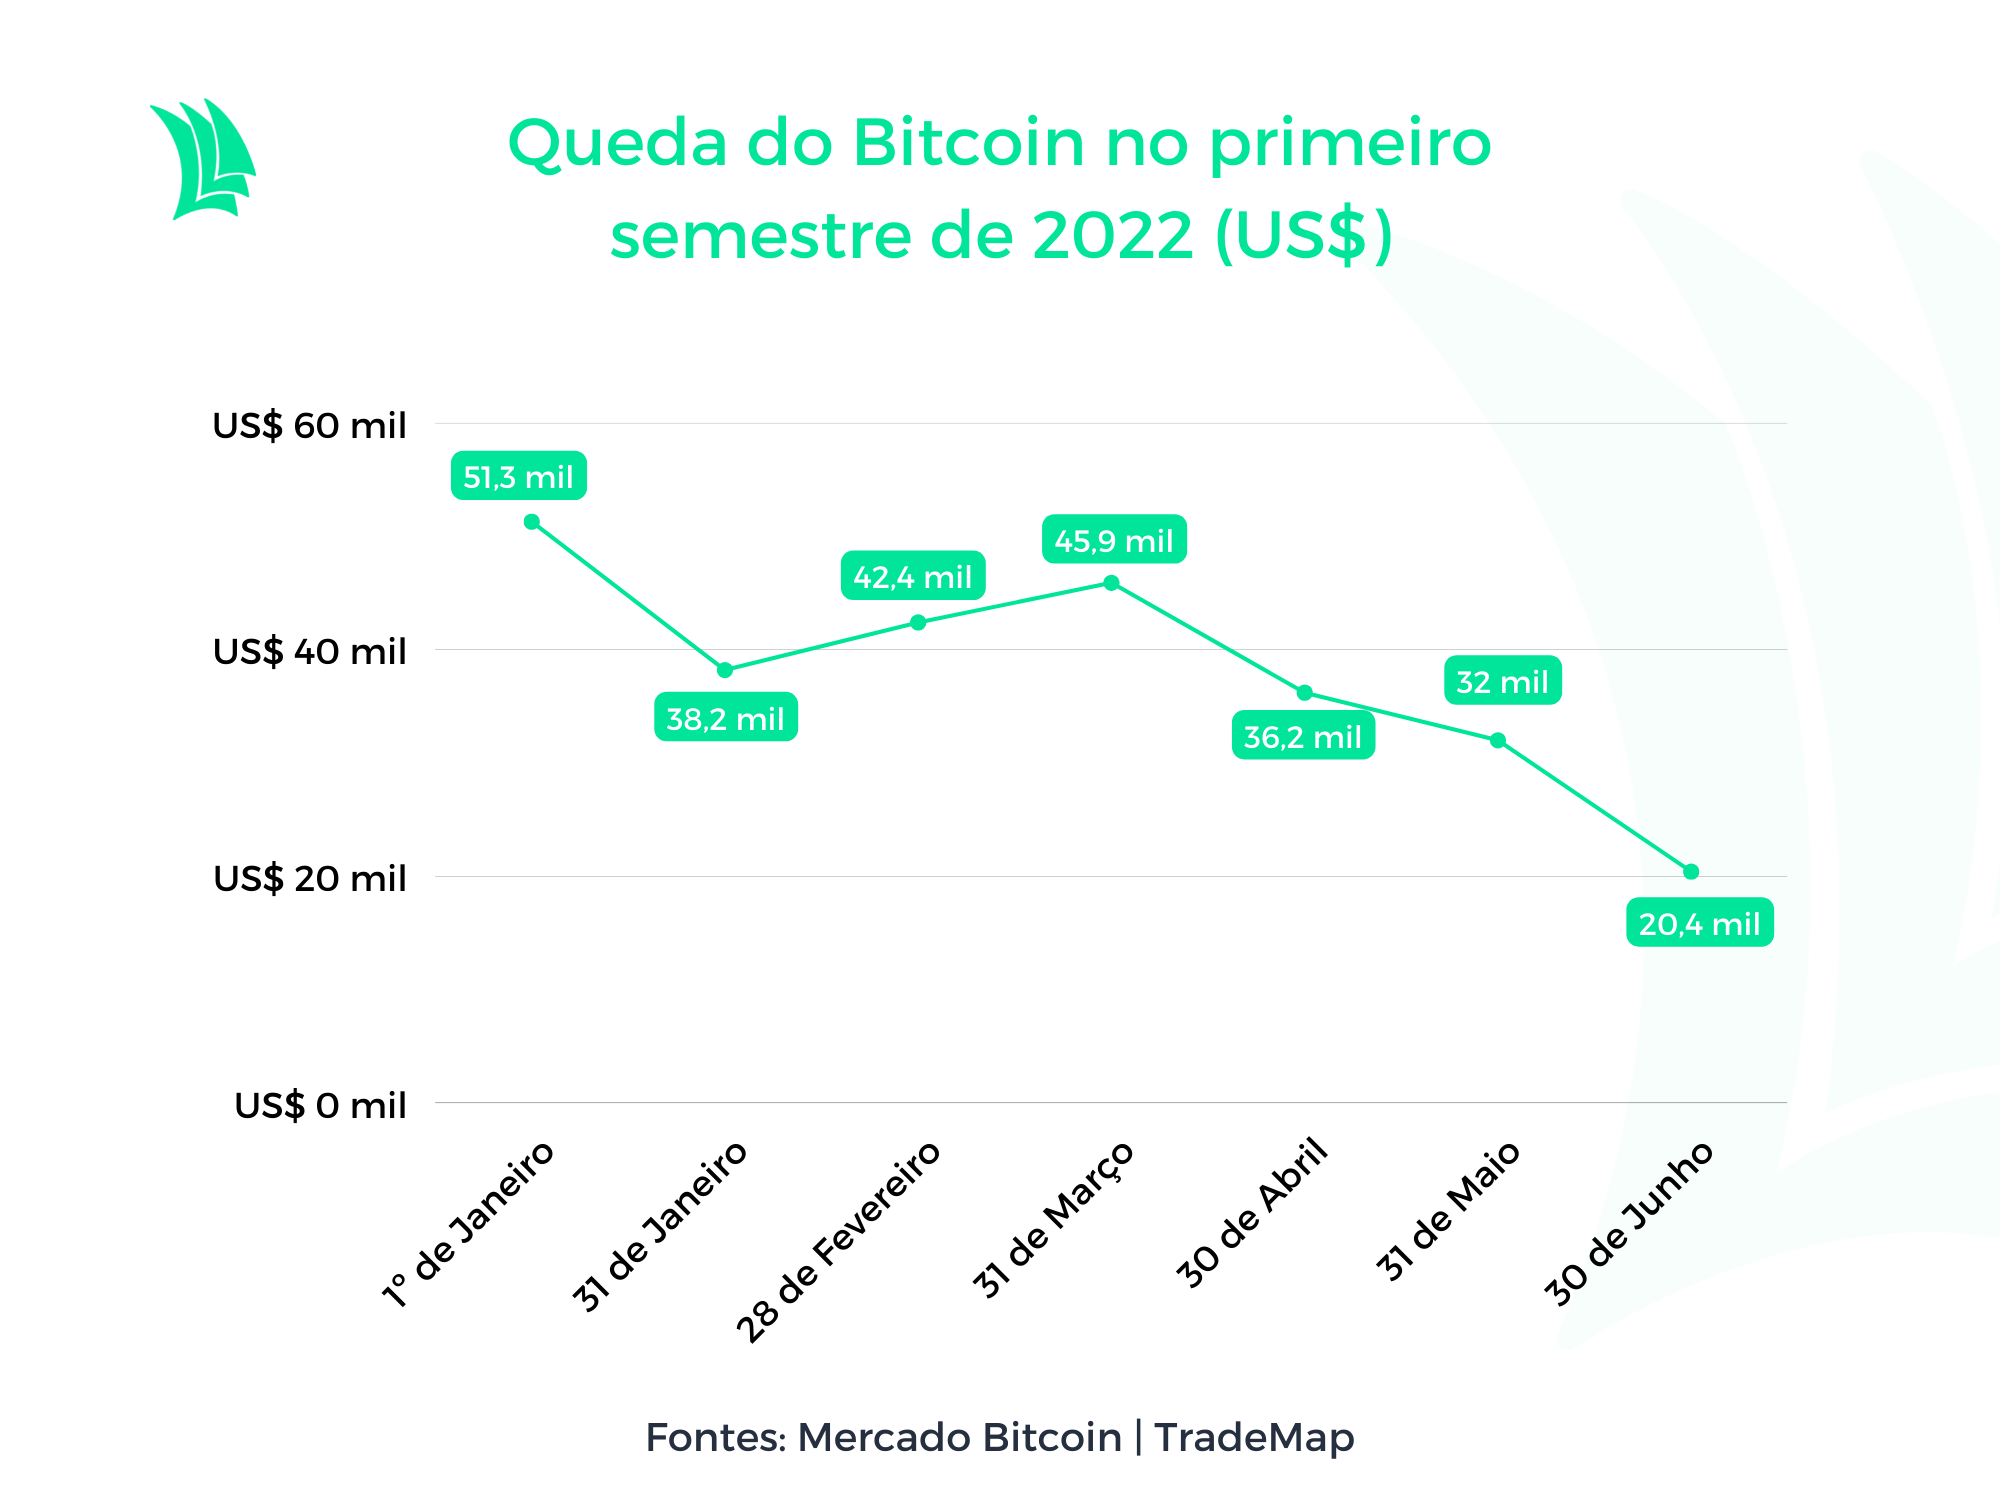 Gráfico com a queda do Bitcoin no primeiro semestre de 2022